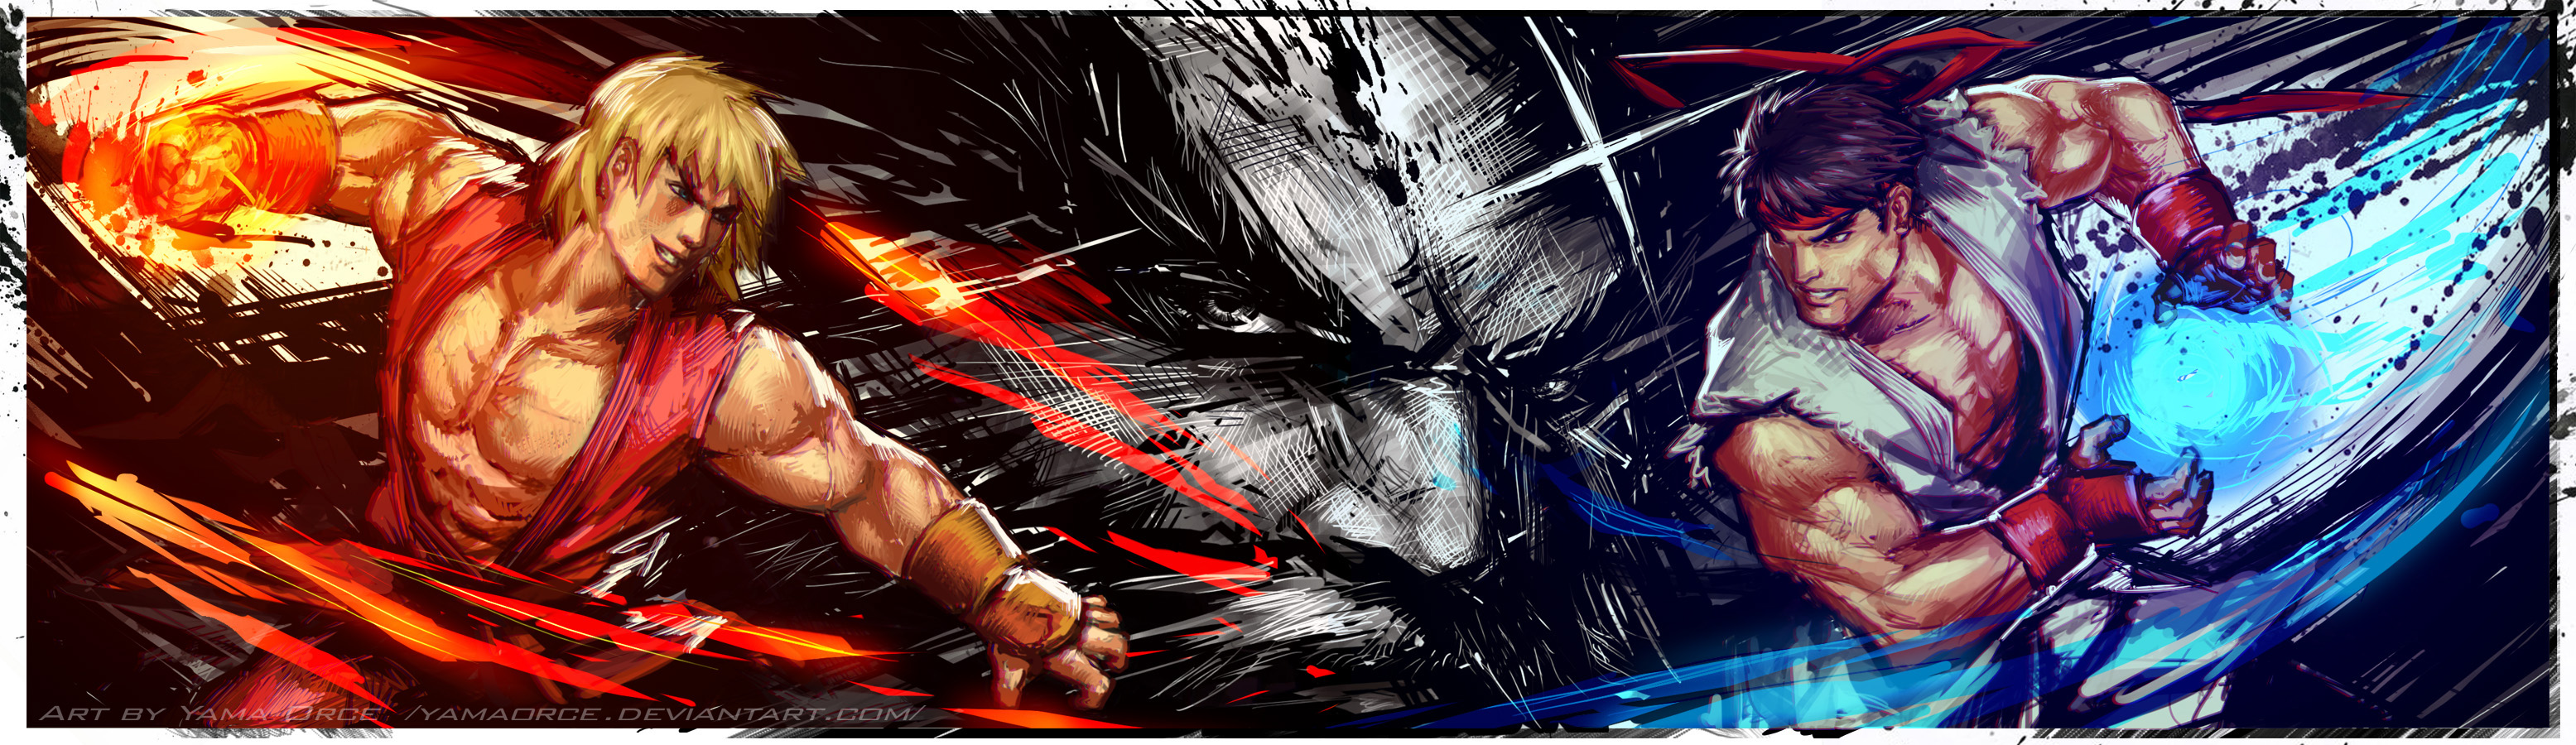 Ultra Street Fighter Ryu Ken By Yamaorce